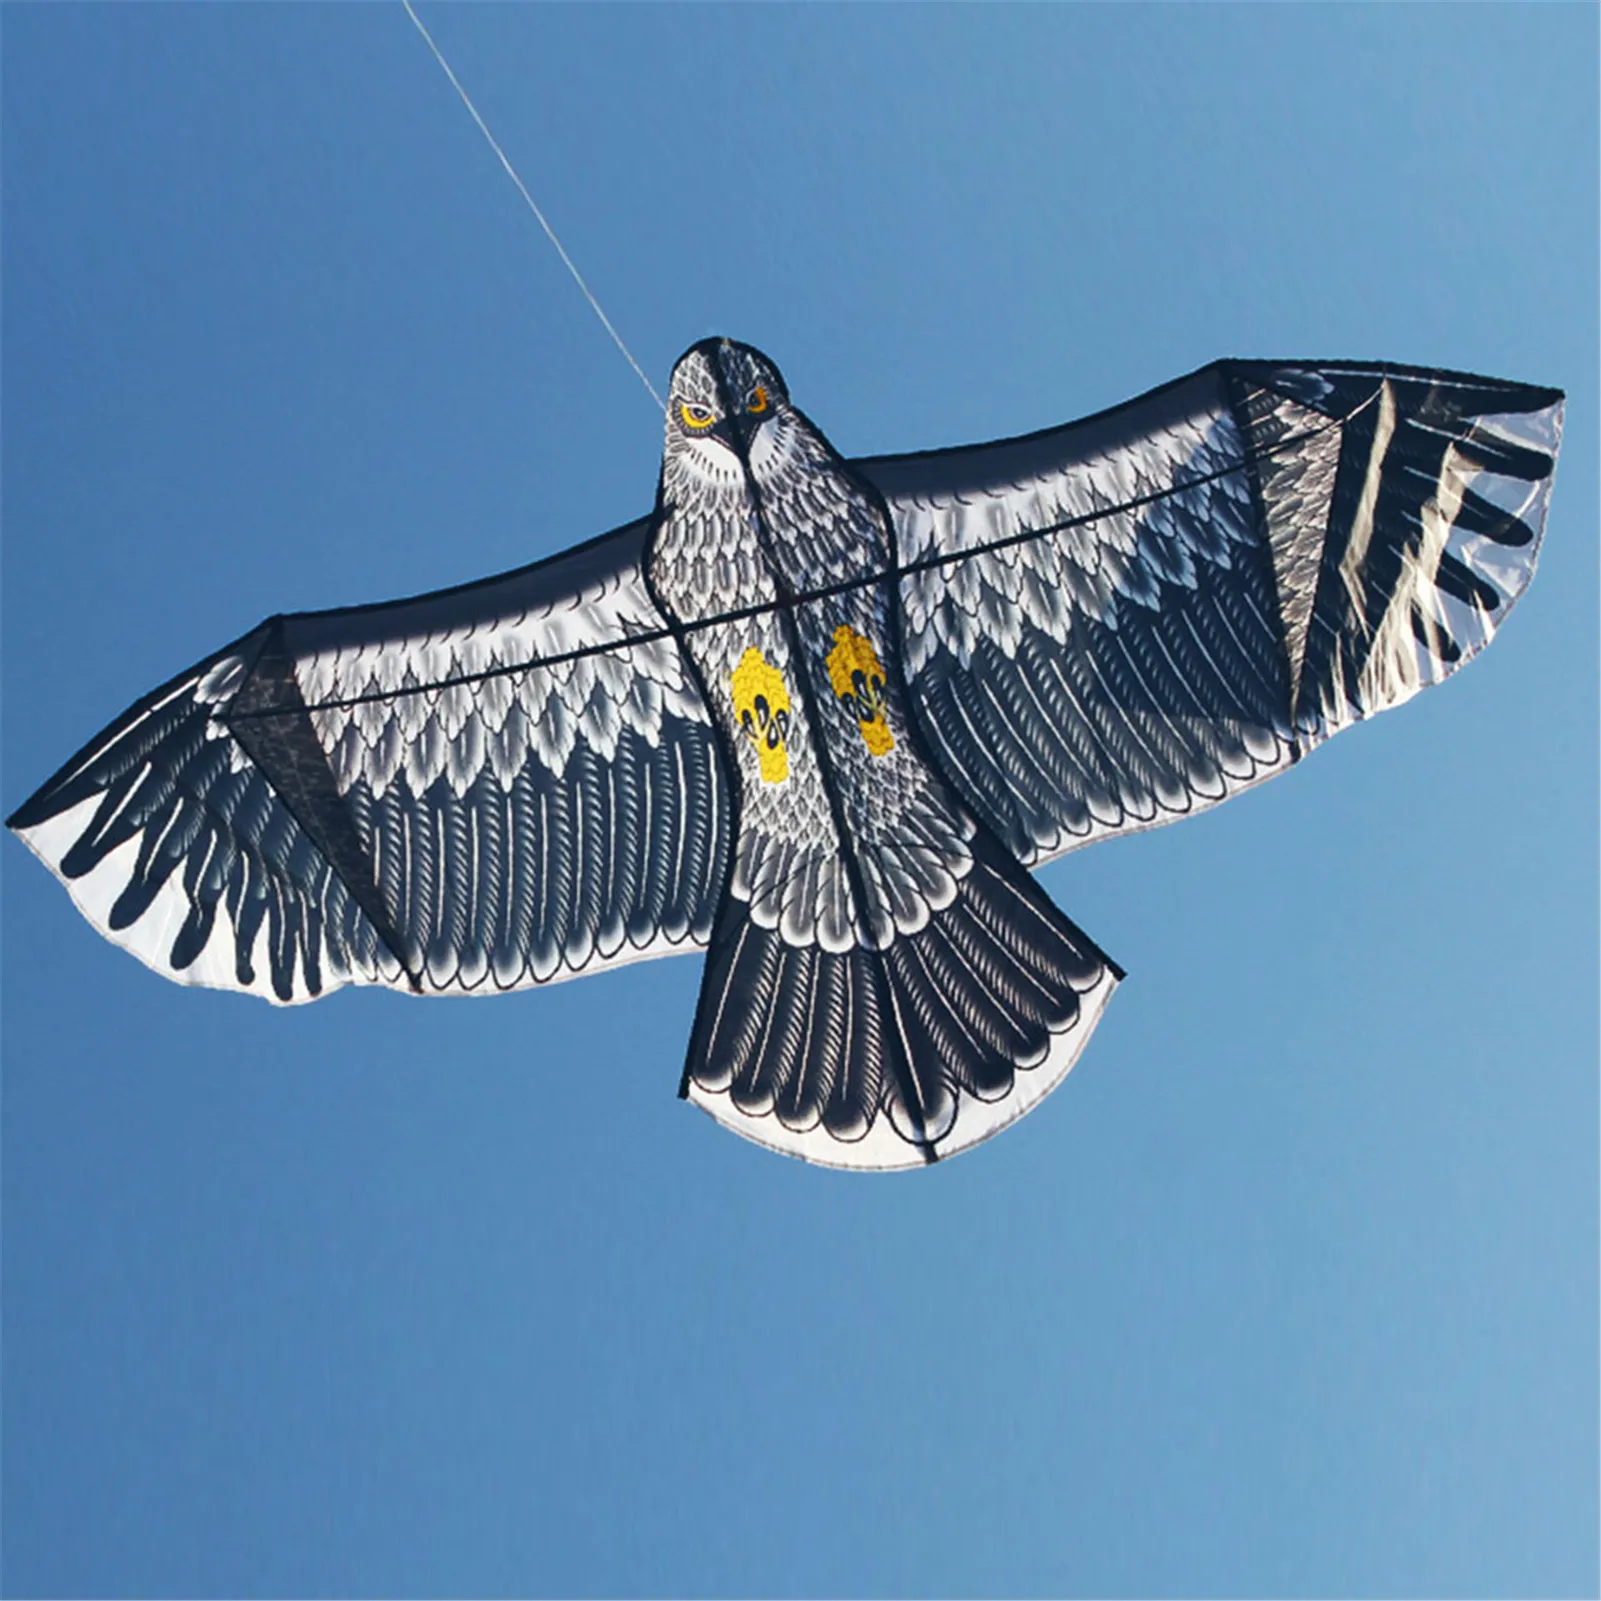 

Emulation Flying Drive Bird Kite Huge Eagle Kite Light Weight Easy To Assemble Bird Kite For Garden Yard Farm Flying Kites New #